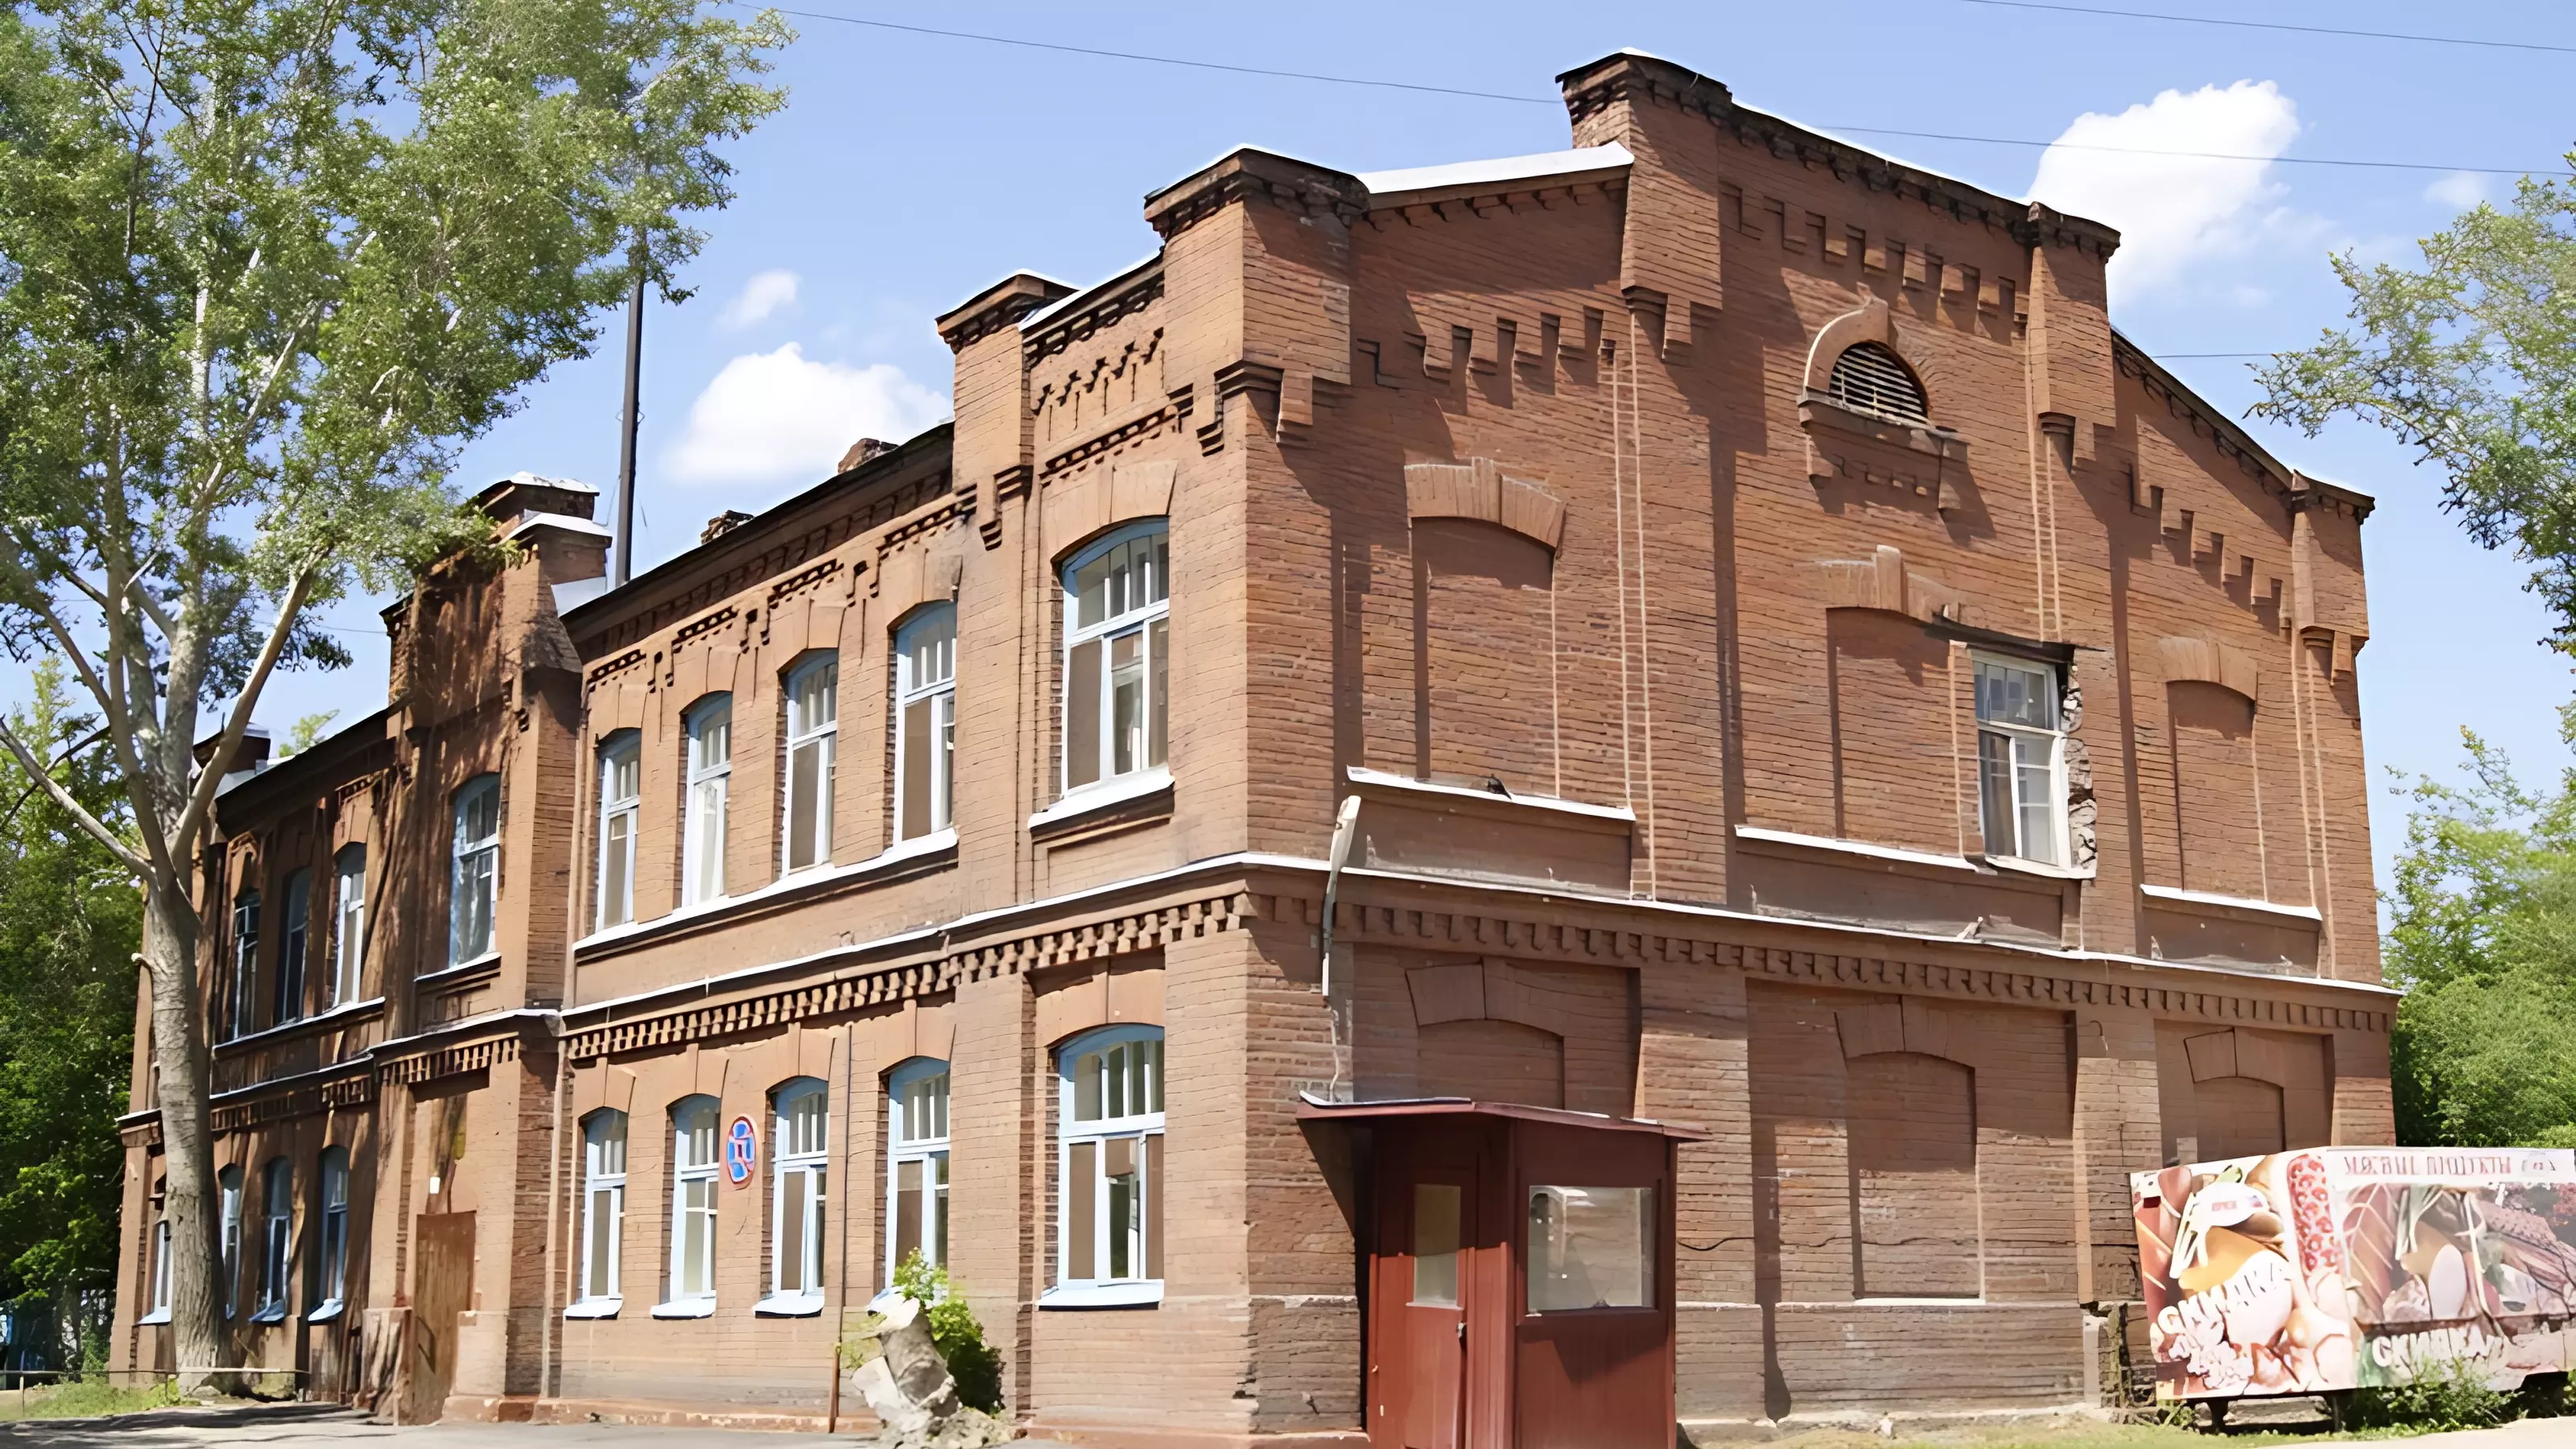 Здание является примером применения «кирпичного стиля» в жилом многоквартирном доме Ново-Николаевска начала XX века